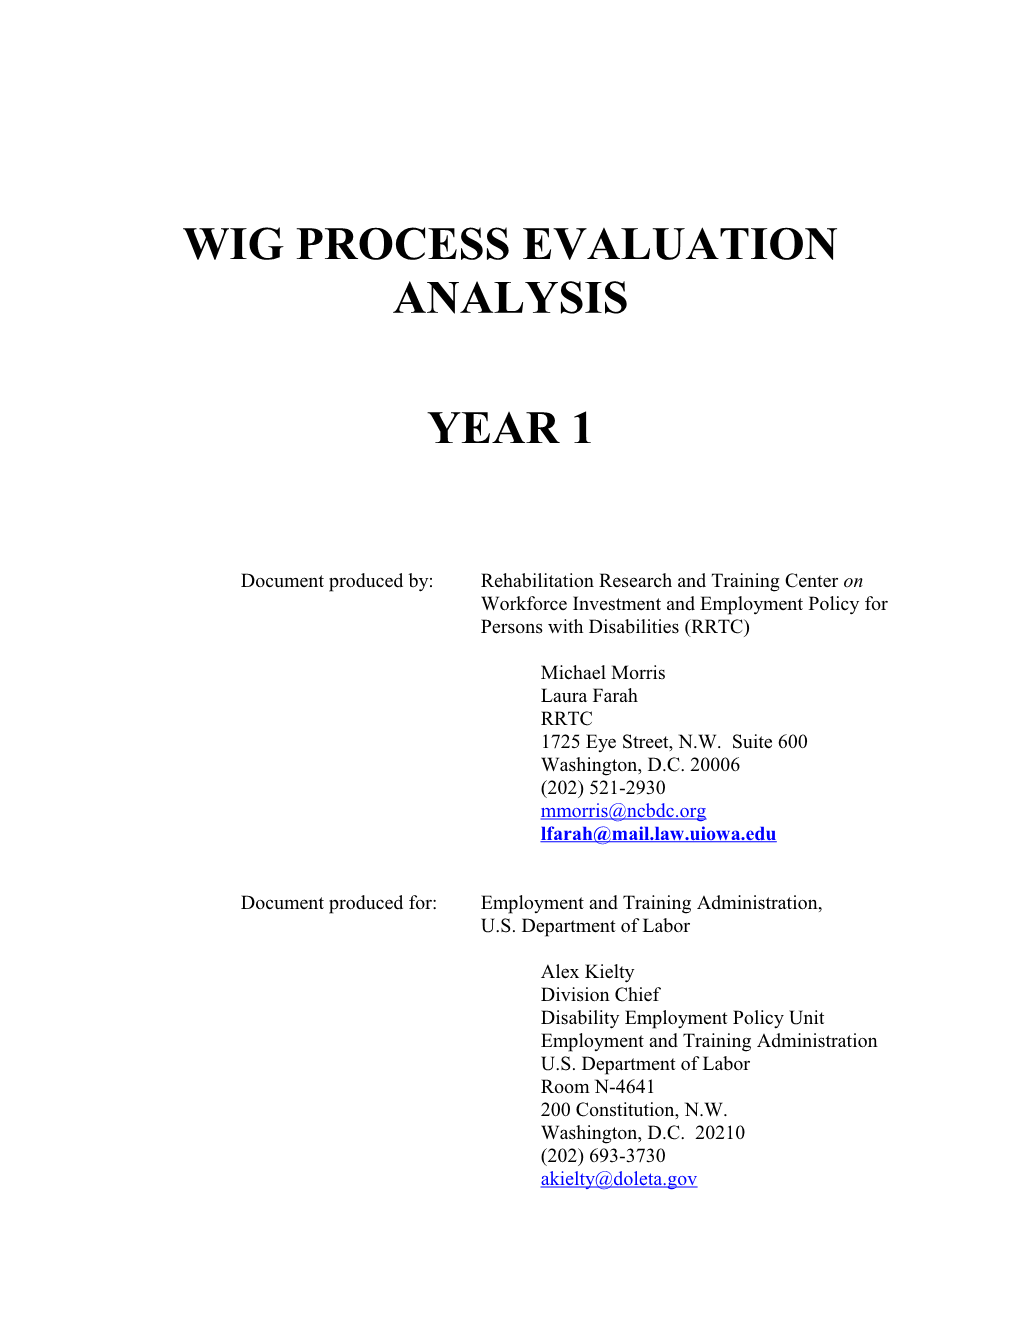 Wig Process Evaluation